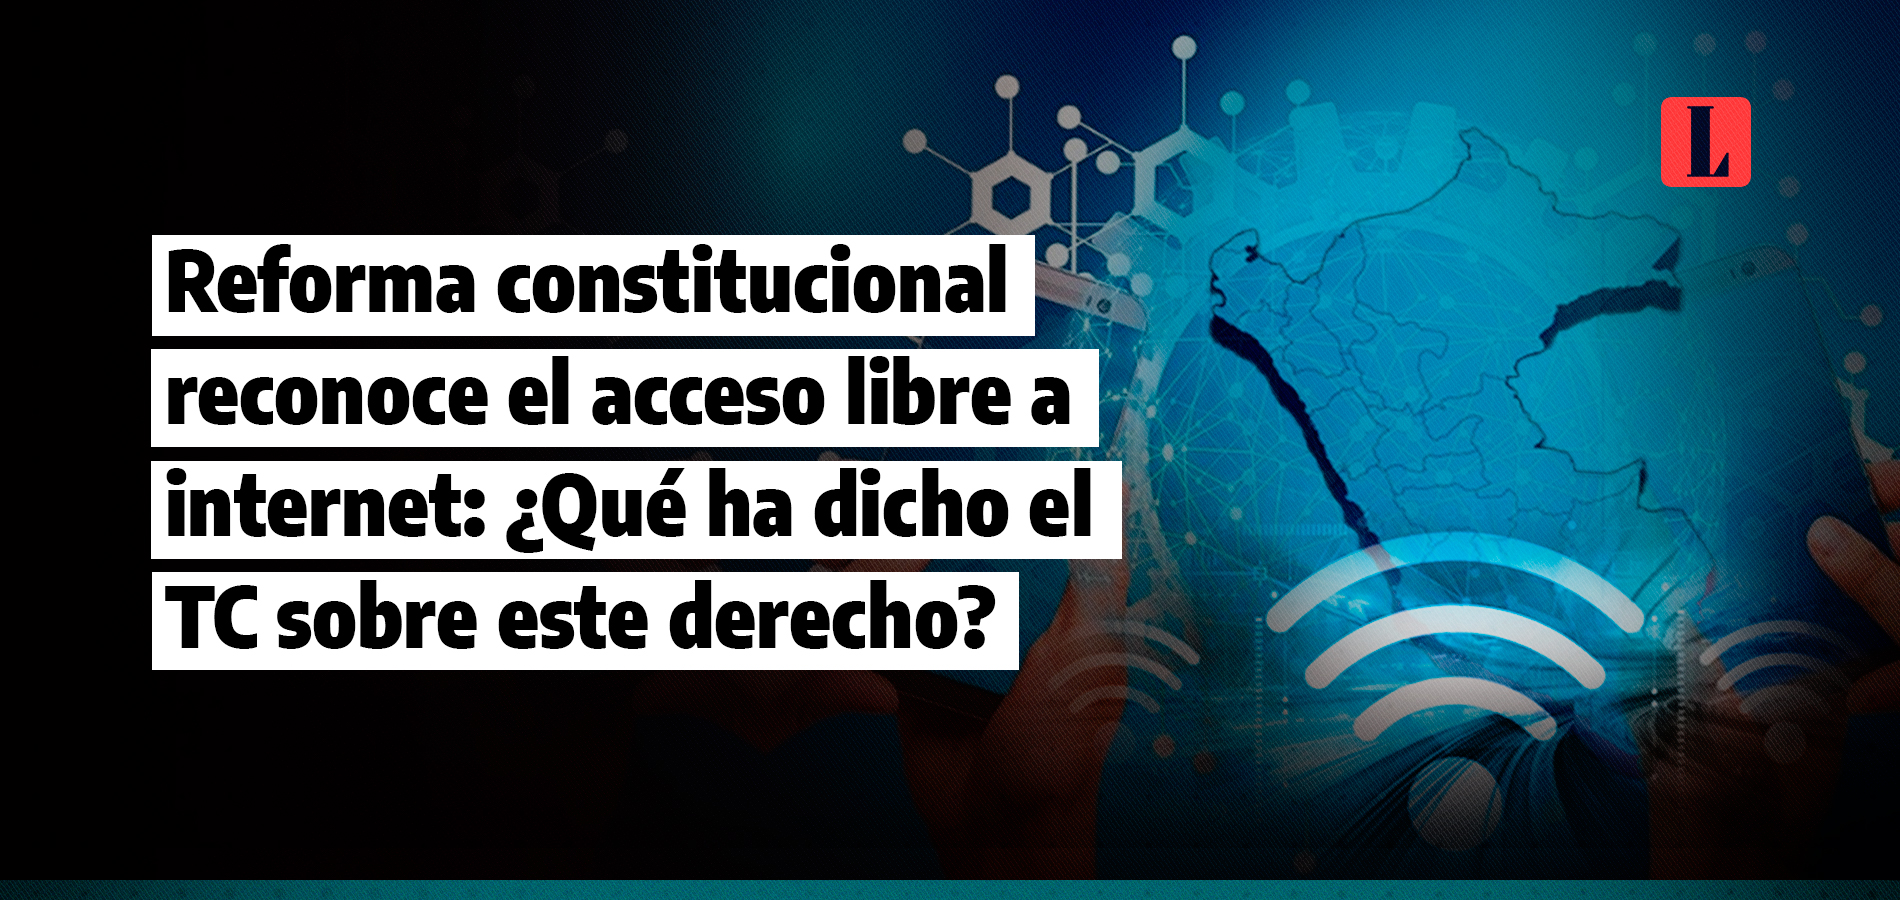 Reforma constitucional reconoce el libre acceso a internet: ¿Qué ha dicho el TC sobre este derecho?